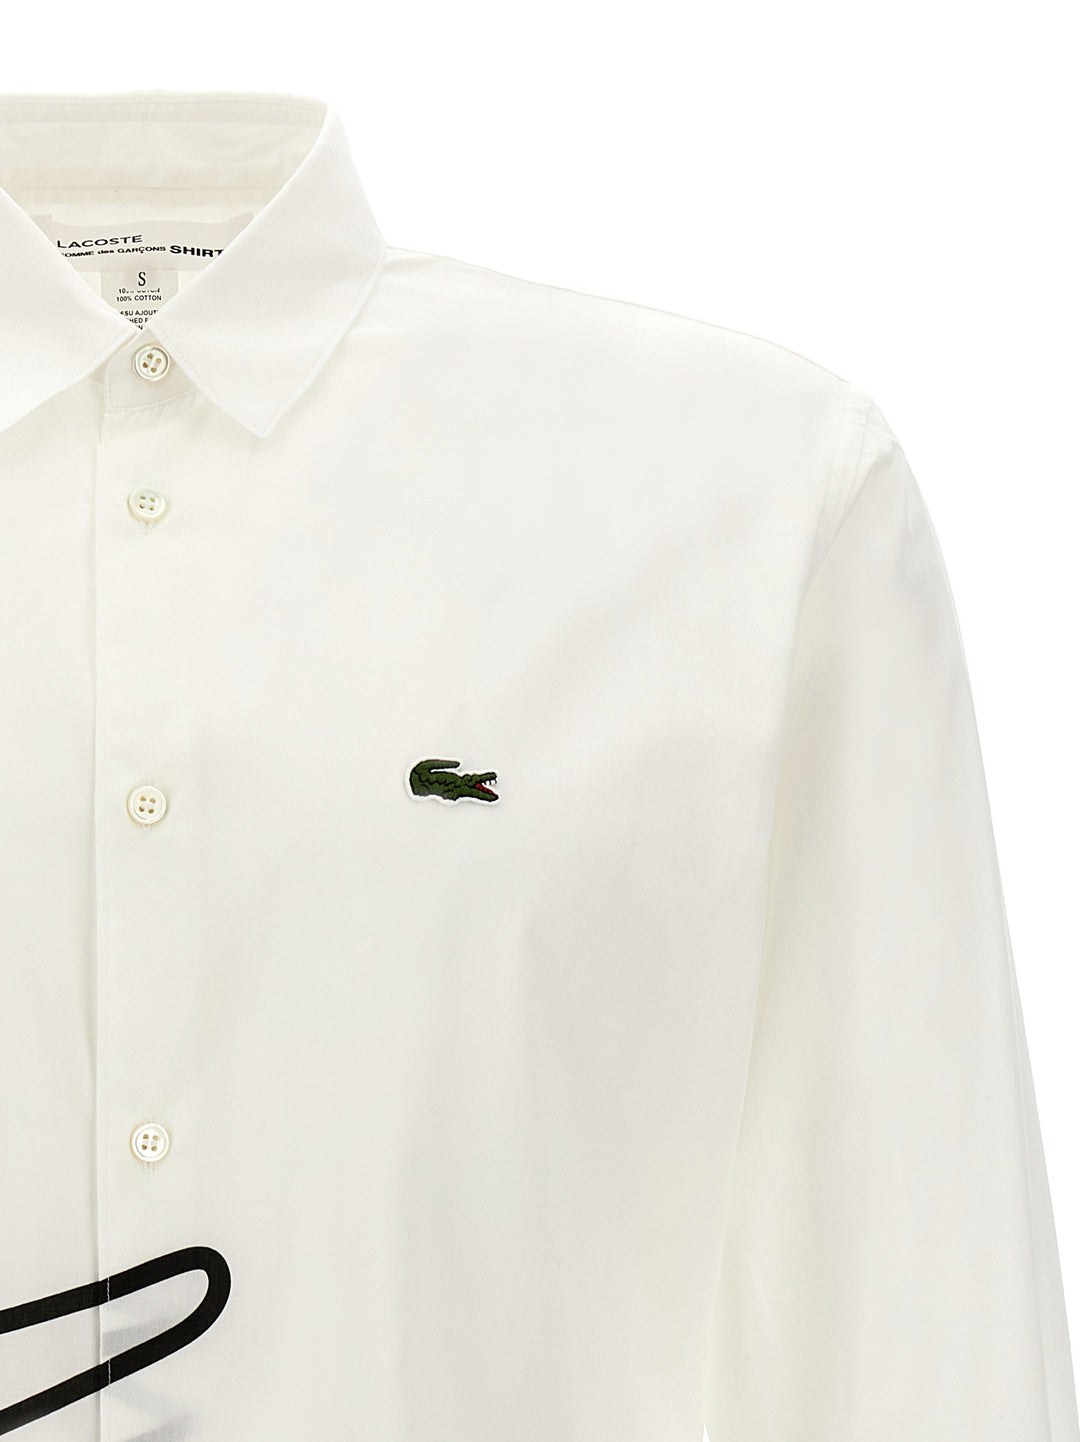 Comme Des GarçOns Shirt X Lacoste Shirt Camicie Bianco/Nero